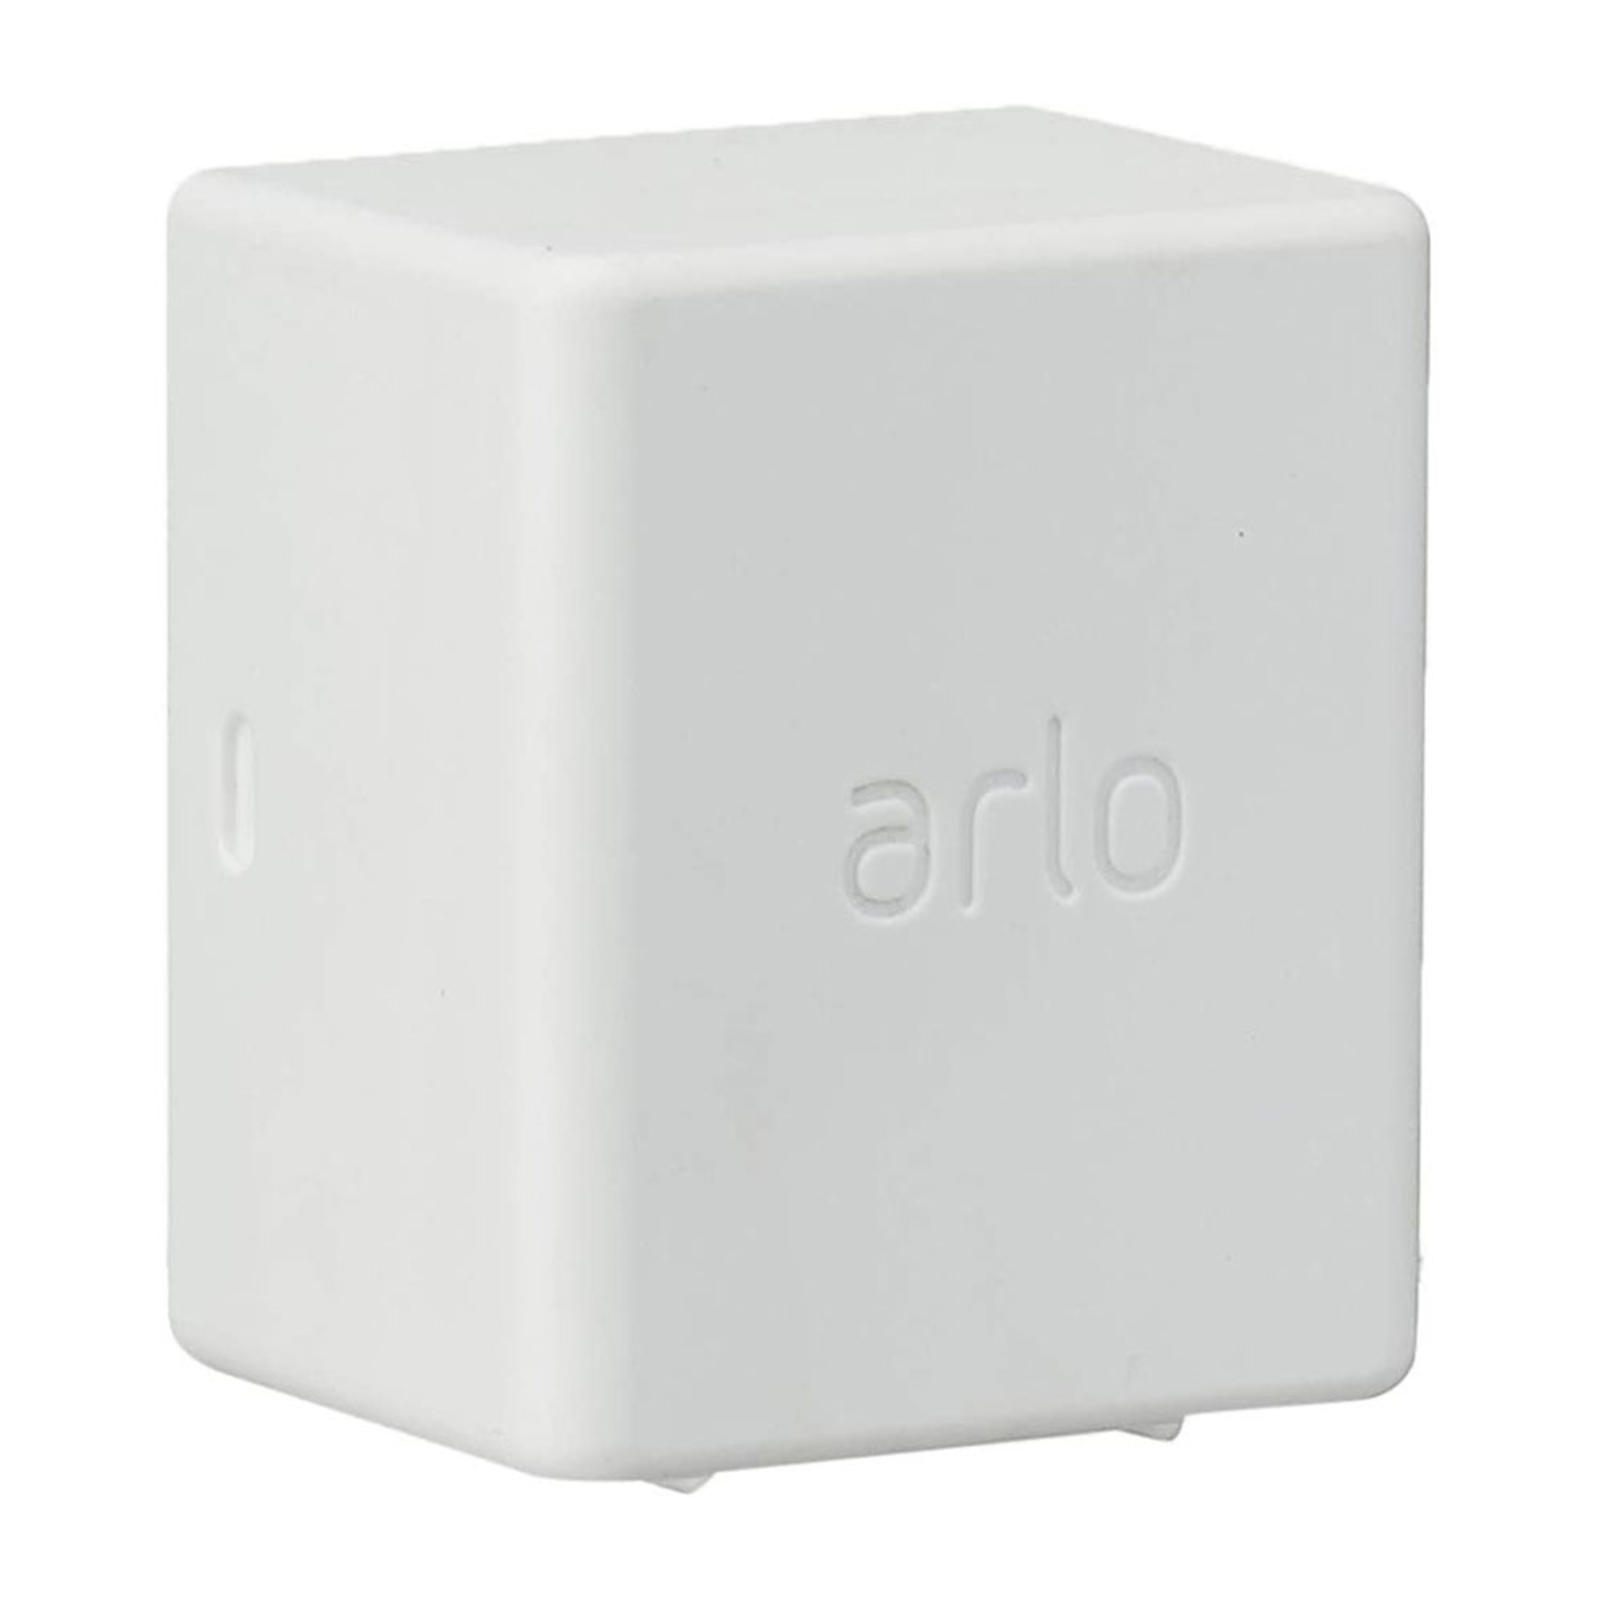 Πρόσθετη μπαταρία Arlo για κάμερες ασφαλείας Ultra, Pro3